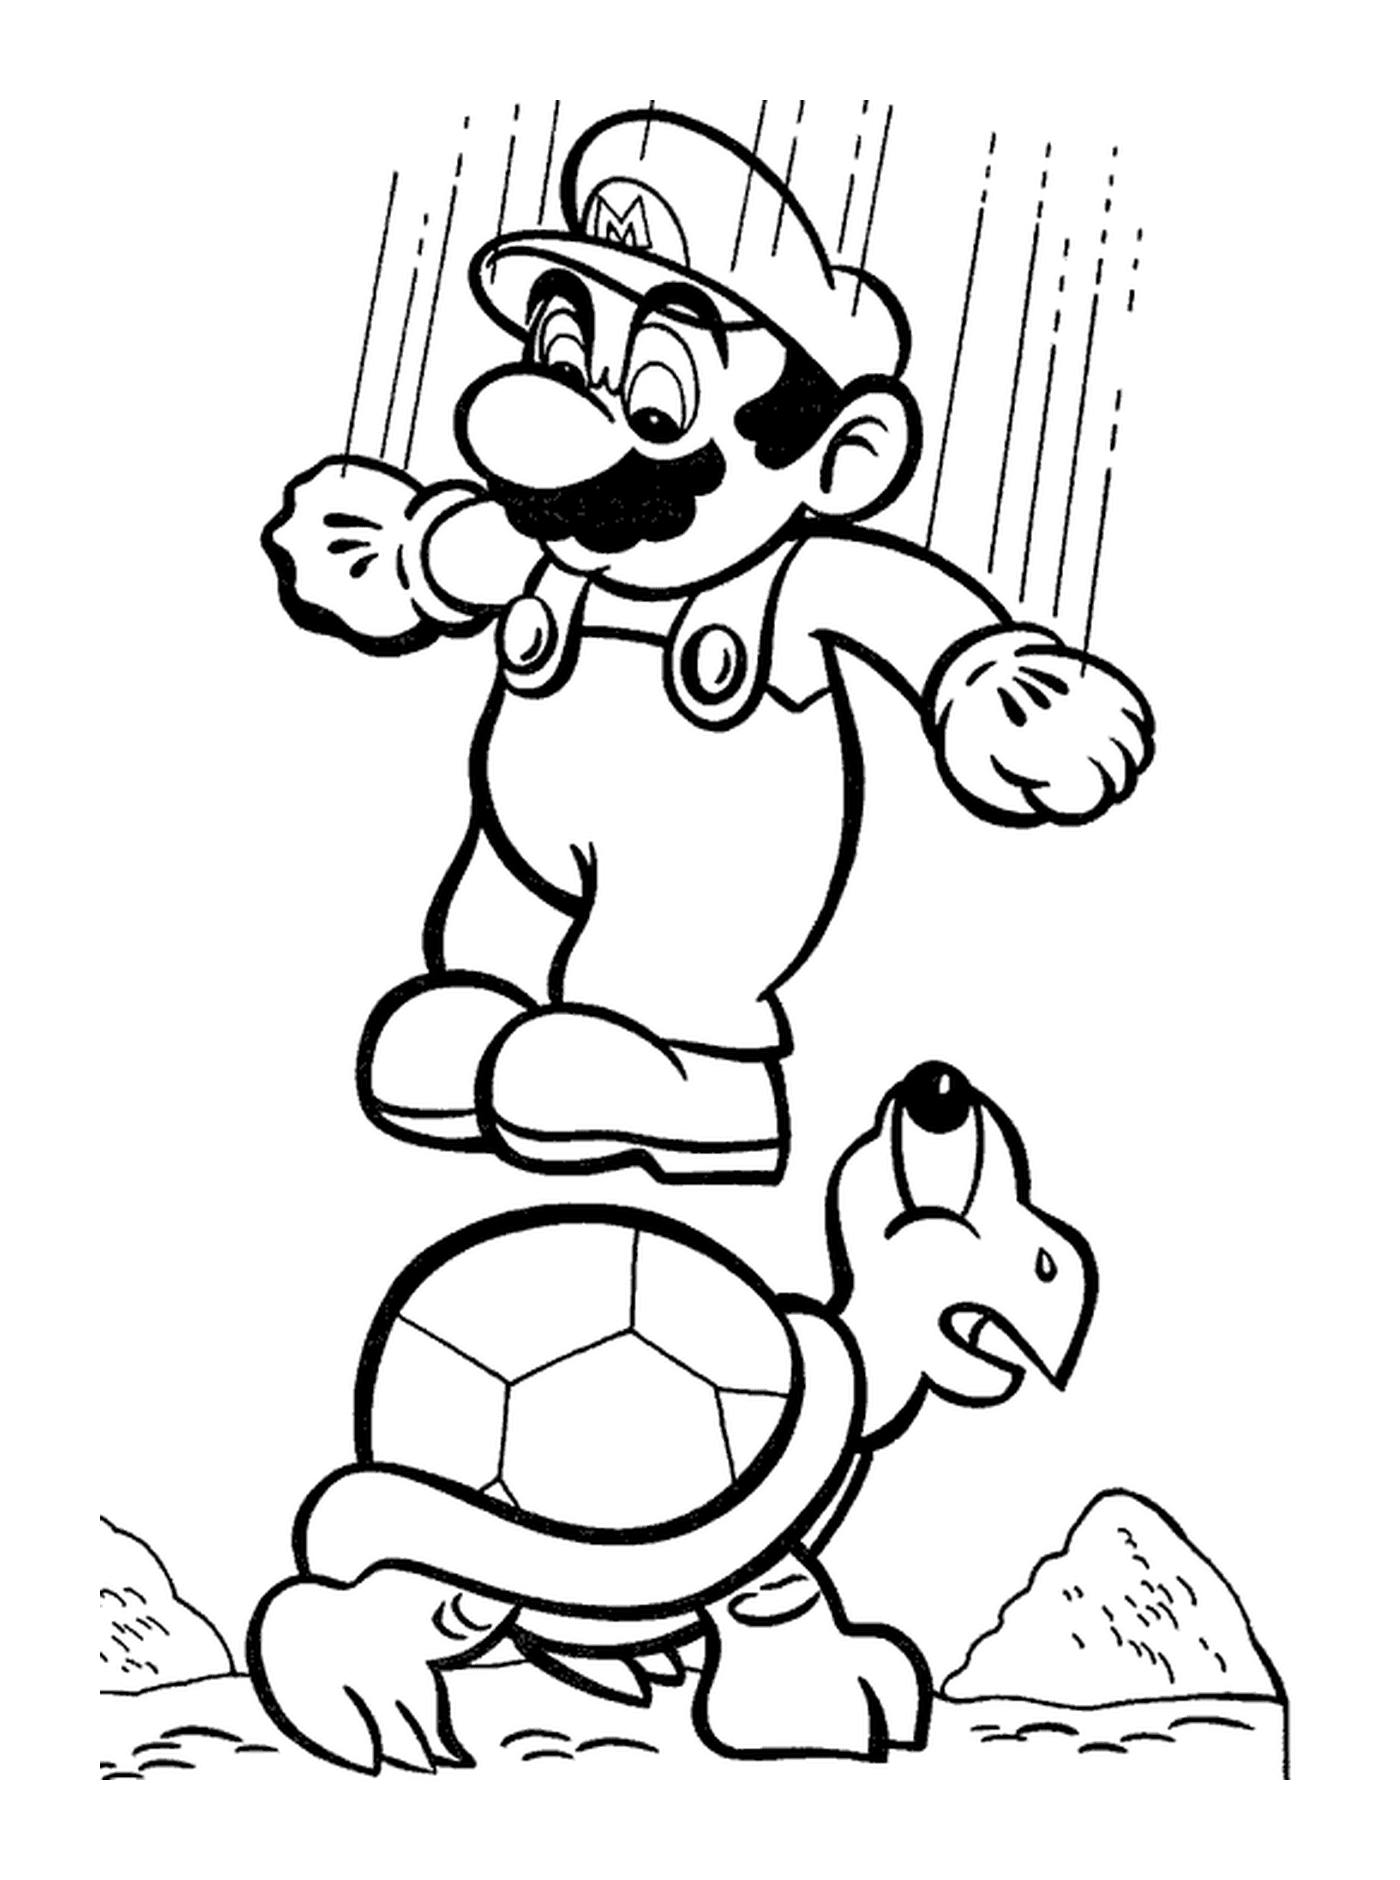  Mario salta sobre una tortuga jugando al fútbol 